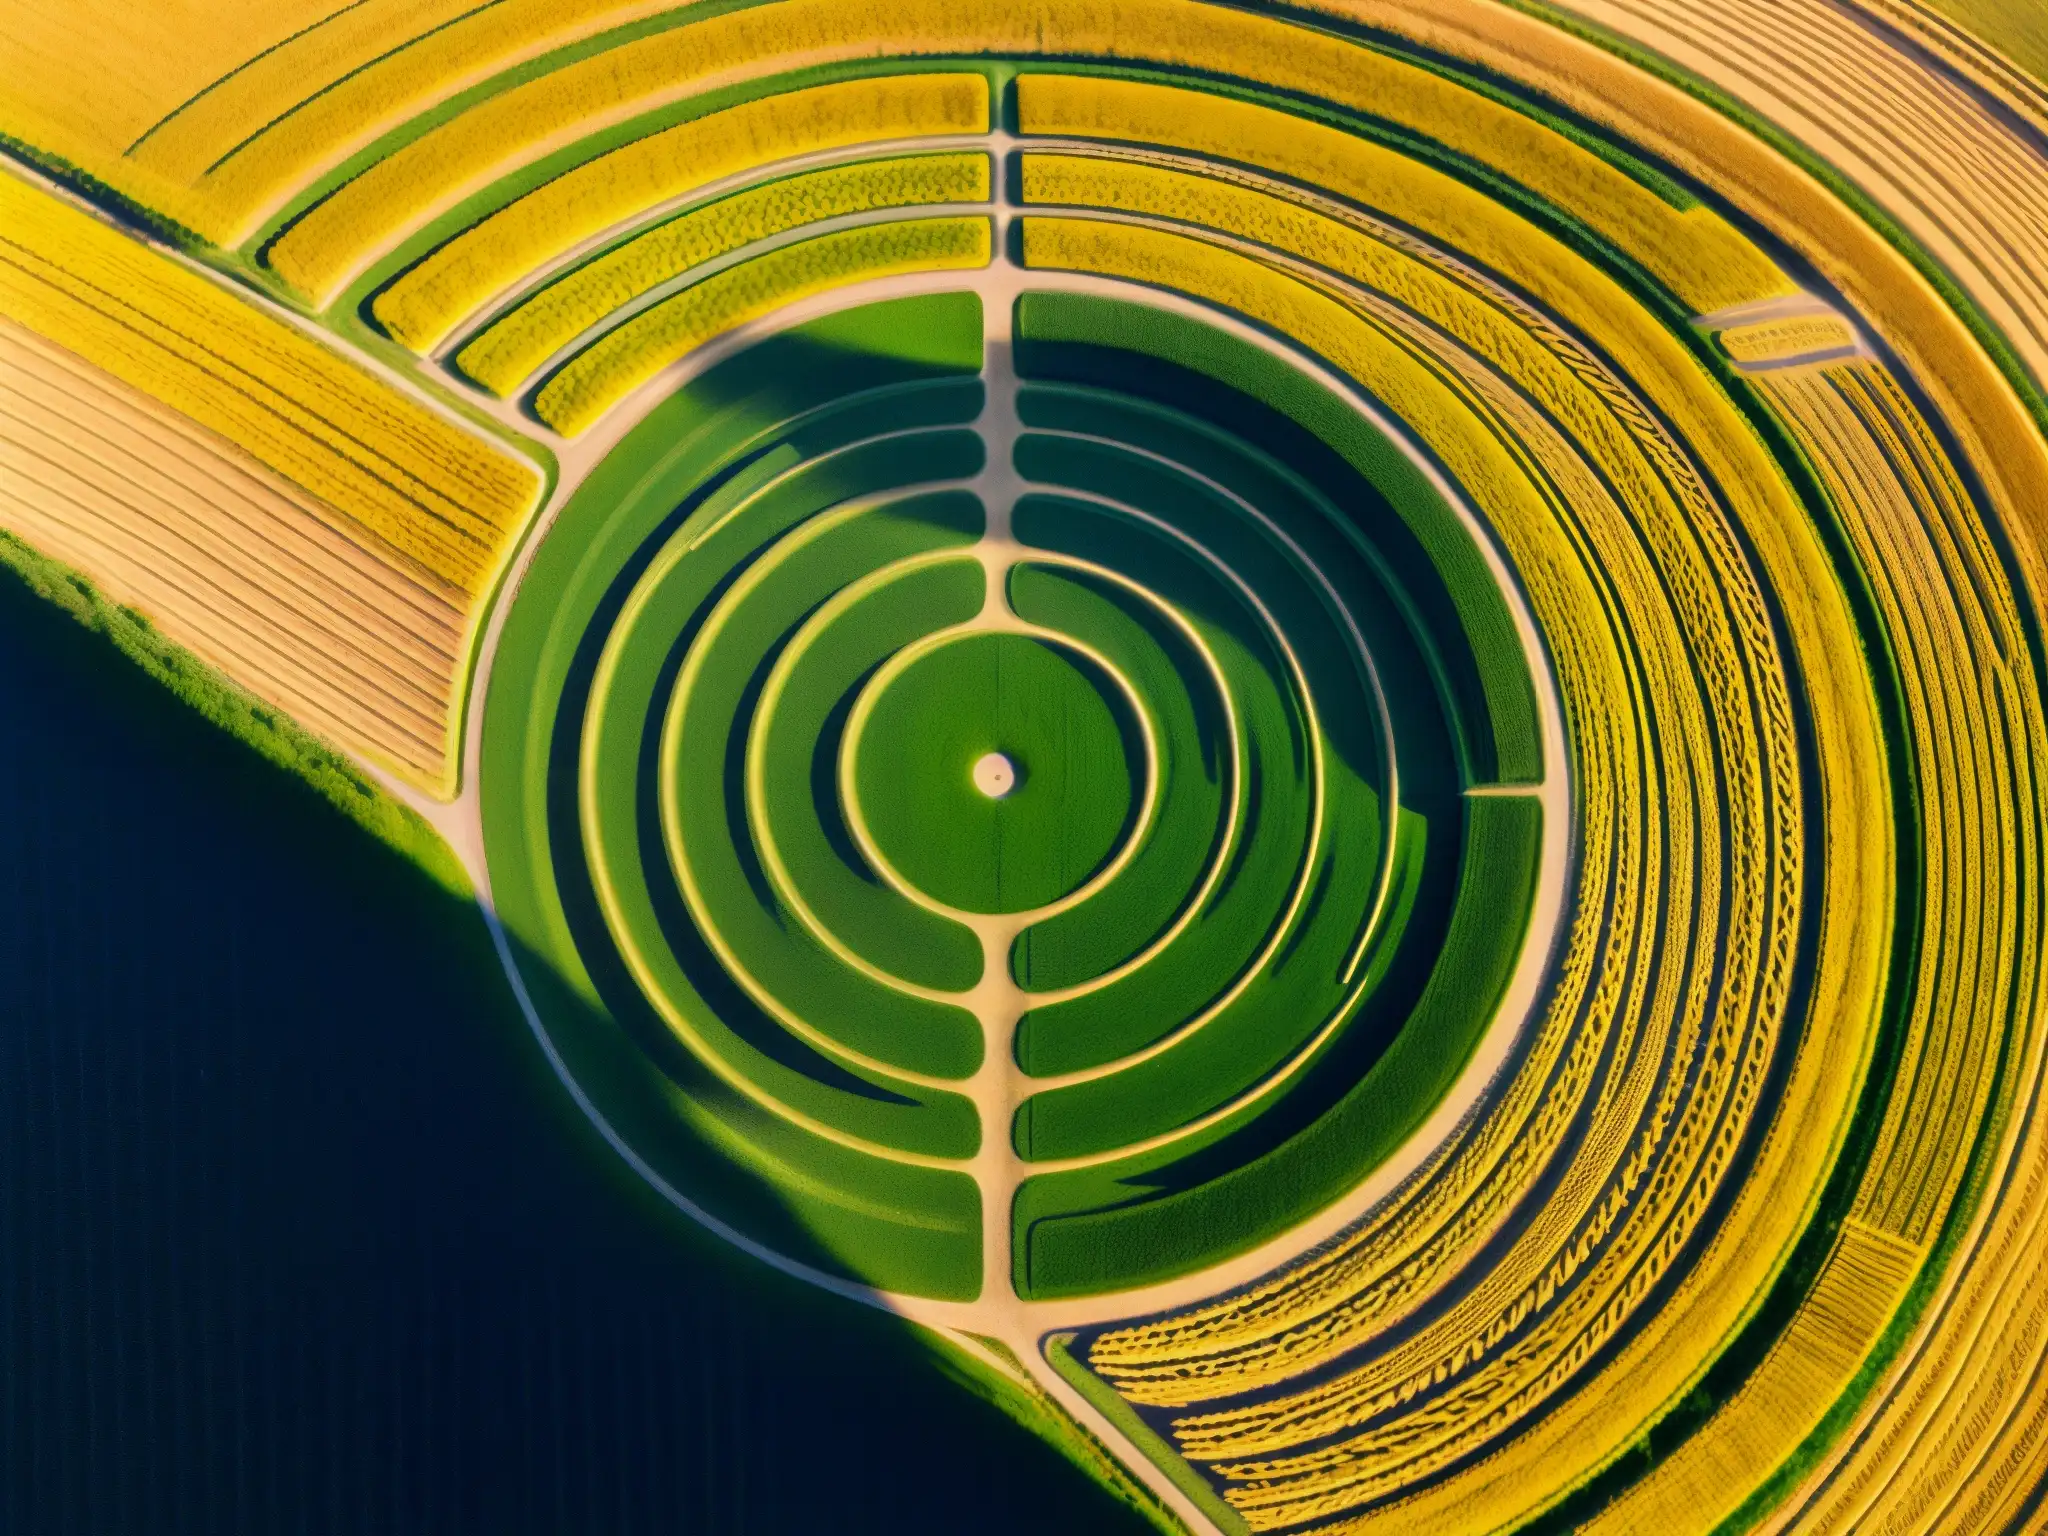 Mensajes extraterrestres en círculos de cultivos: Intrincado diseño geométrico en campo de trigo dorado, con sombras largas y atmósfera misteriosa